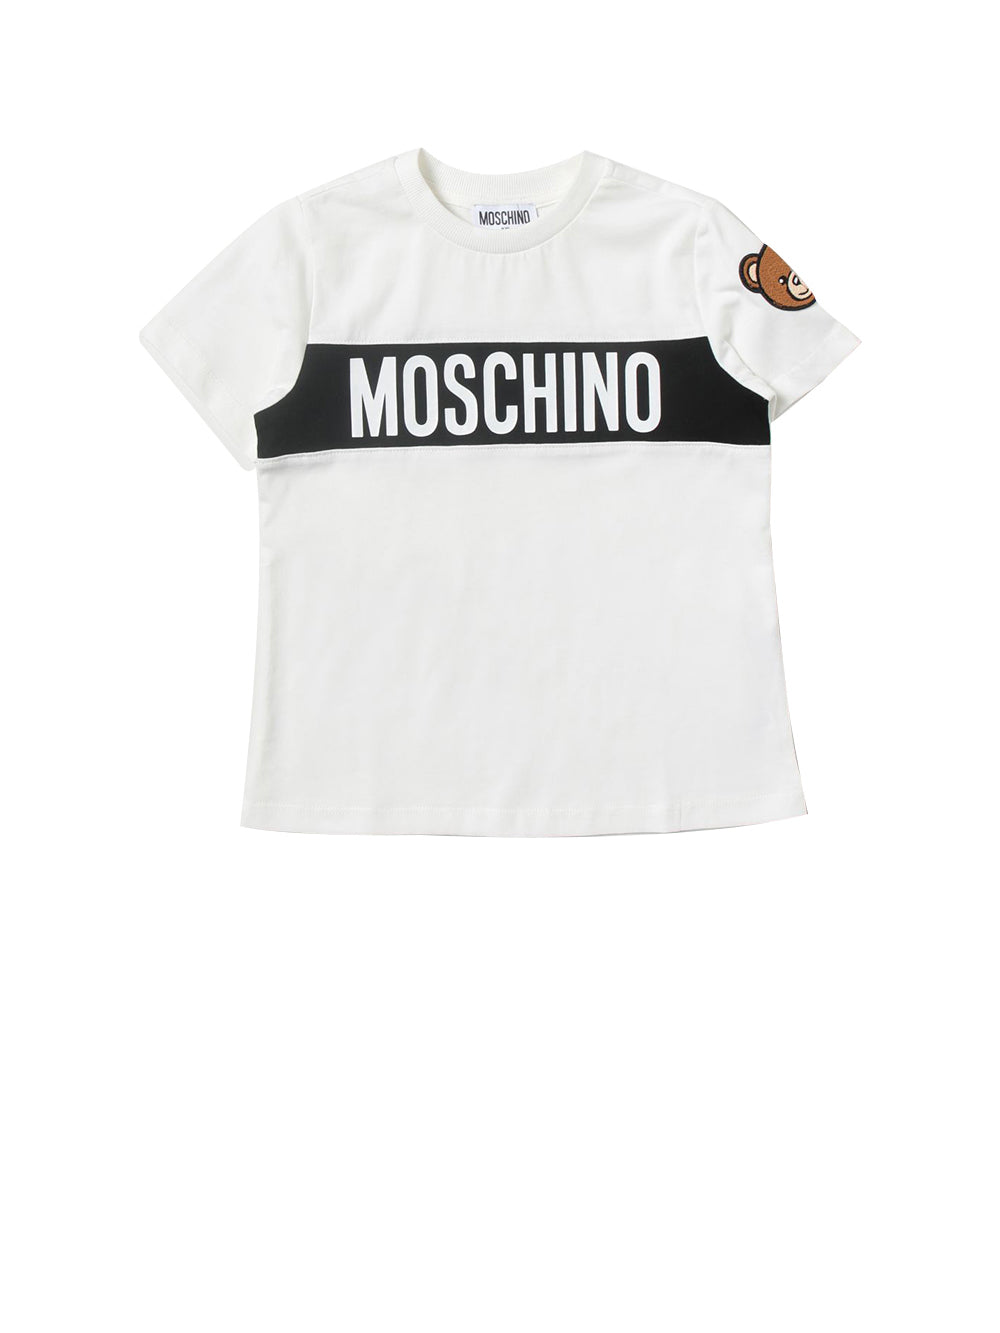 MOSCHINO ABBIGLIAMENTO T-shirt Bambina con lettering brand